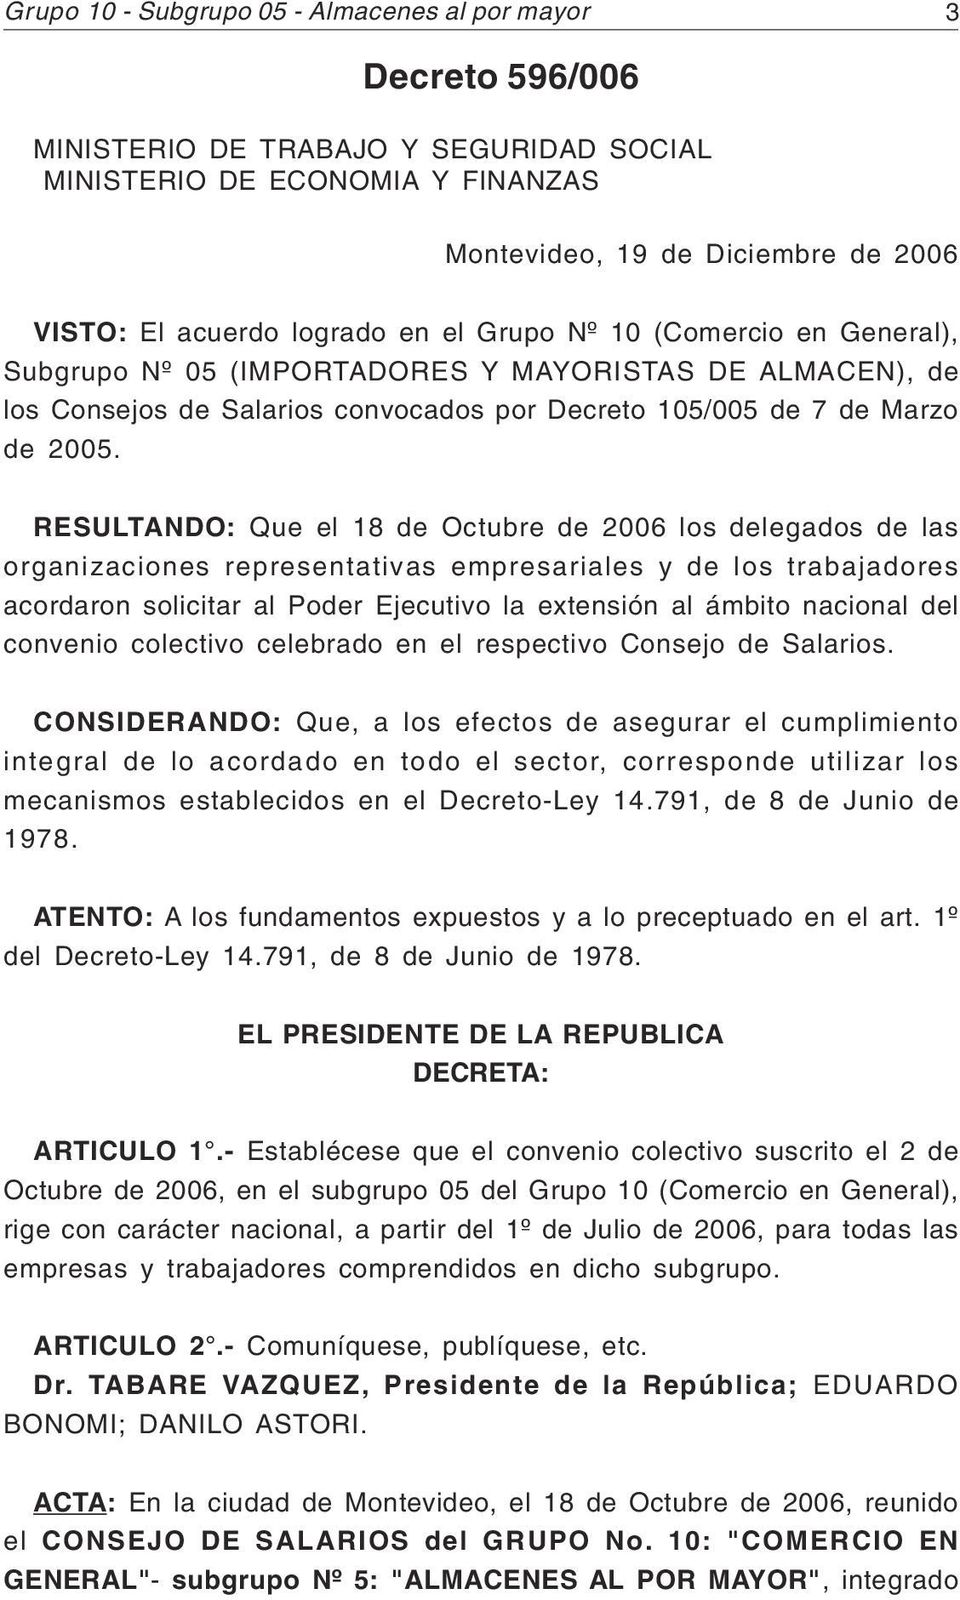 RESULTANDO: Que el 18 de Octubre de 2006 los delegados de las organizaciones representativas empresariales y de los trabajadores acordaron solicitar al Poder Ejecutivo la extensión al ámbito nacional